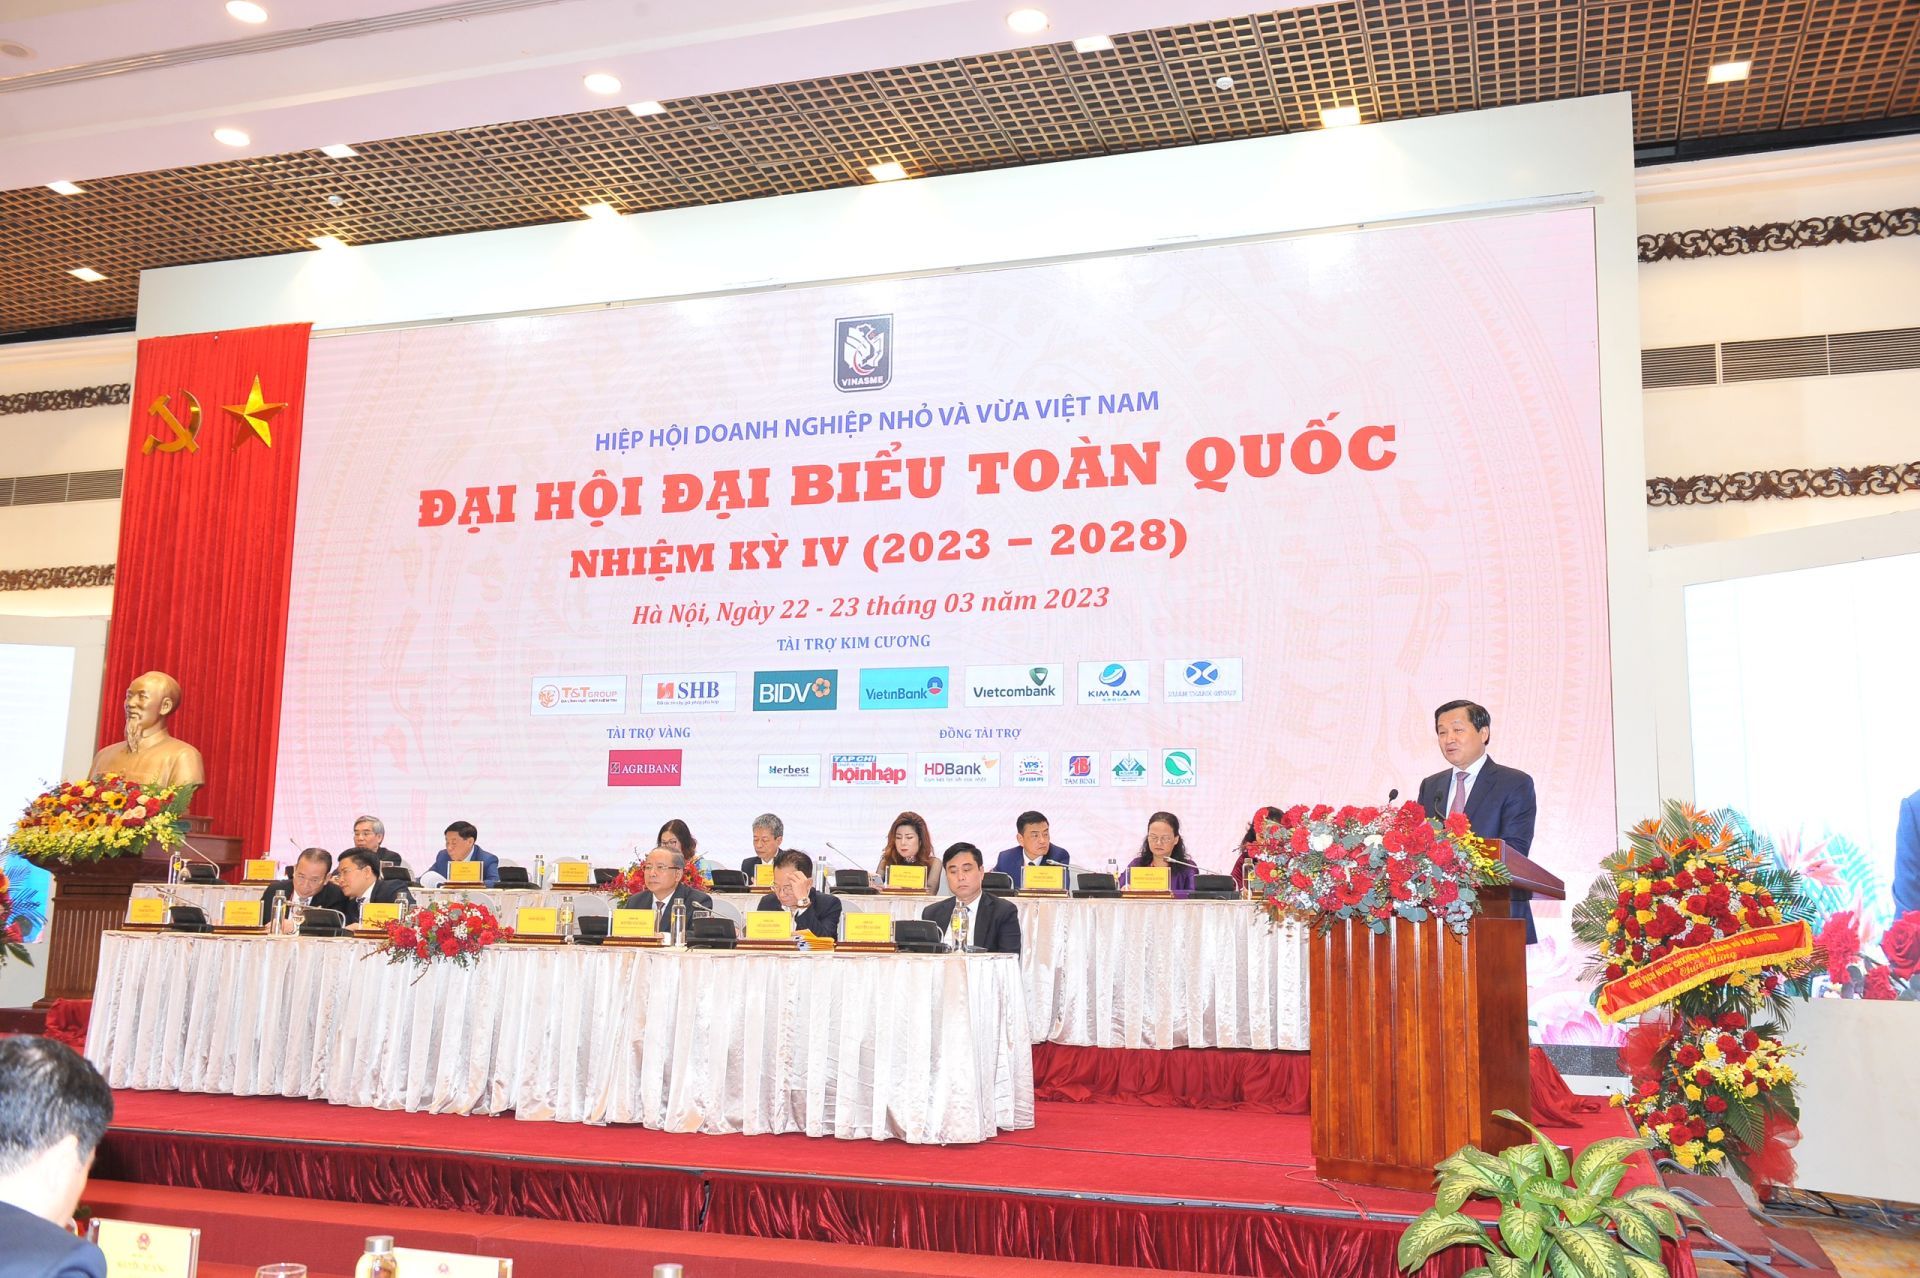 Theo Phó thủ tướng Lê Minh Khái, Hiệp hội Doanh nghiệp nhỏ và vừa Việt Nam đã có sự phát triển, nỗ lực không ngừng cùng cộng đồng doanh nghiệp